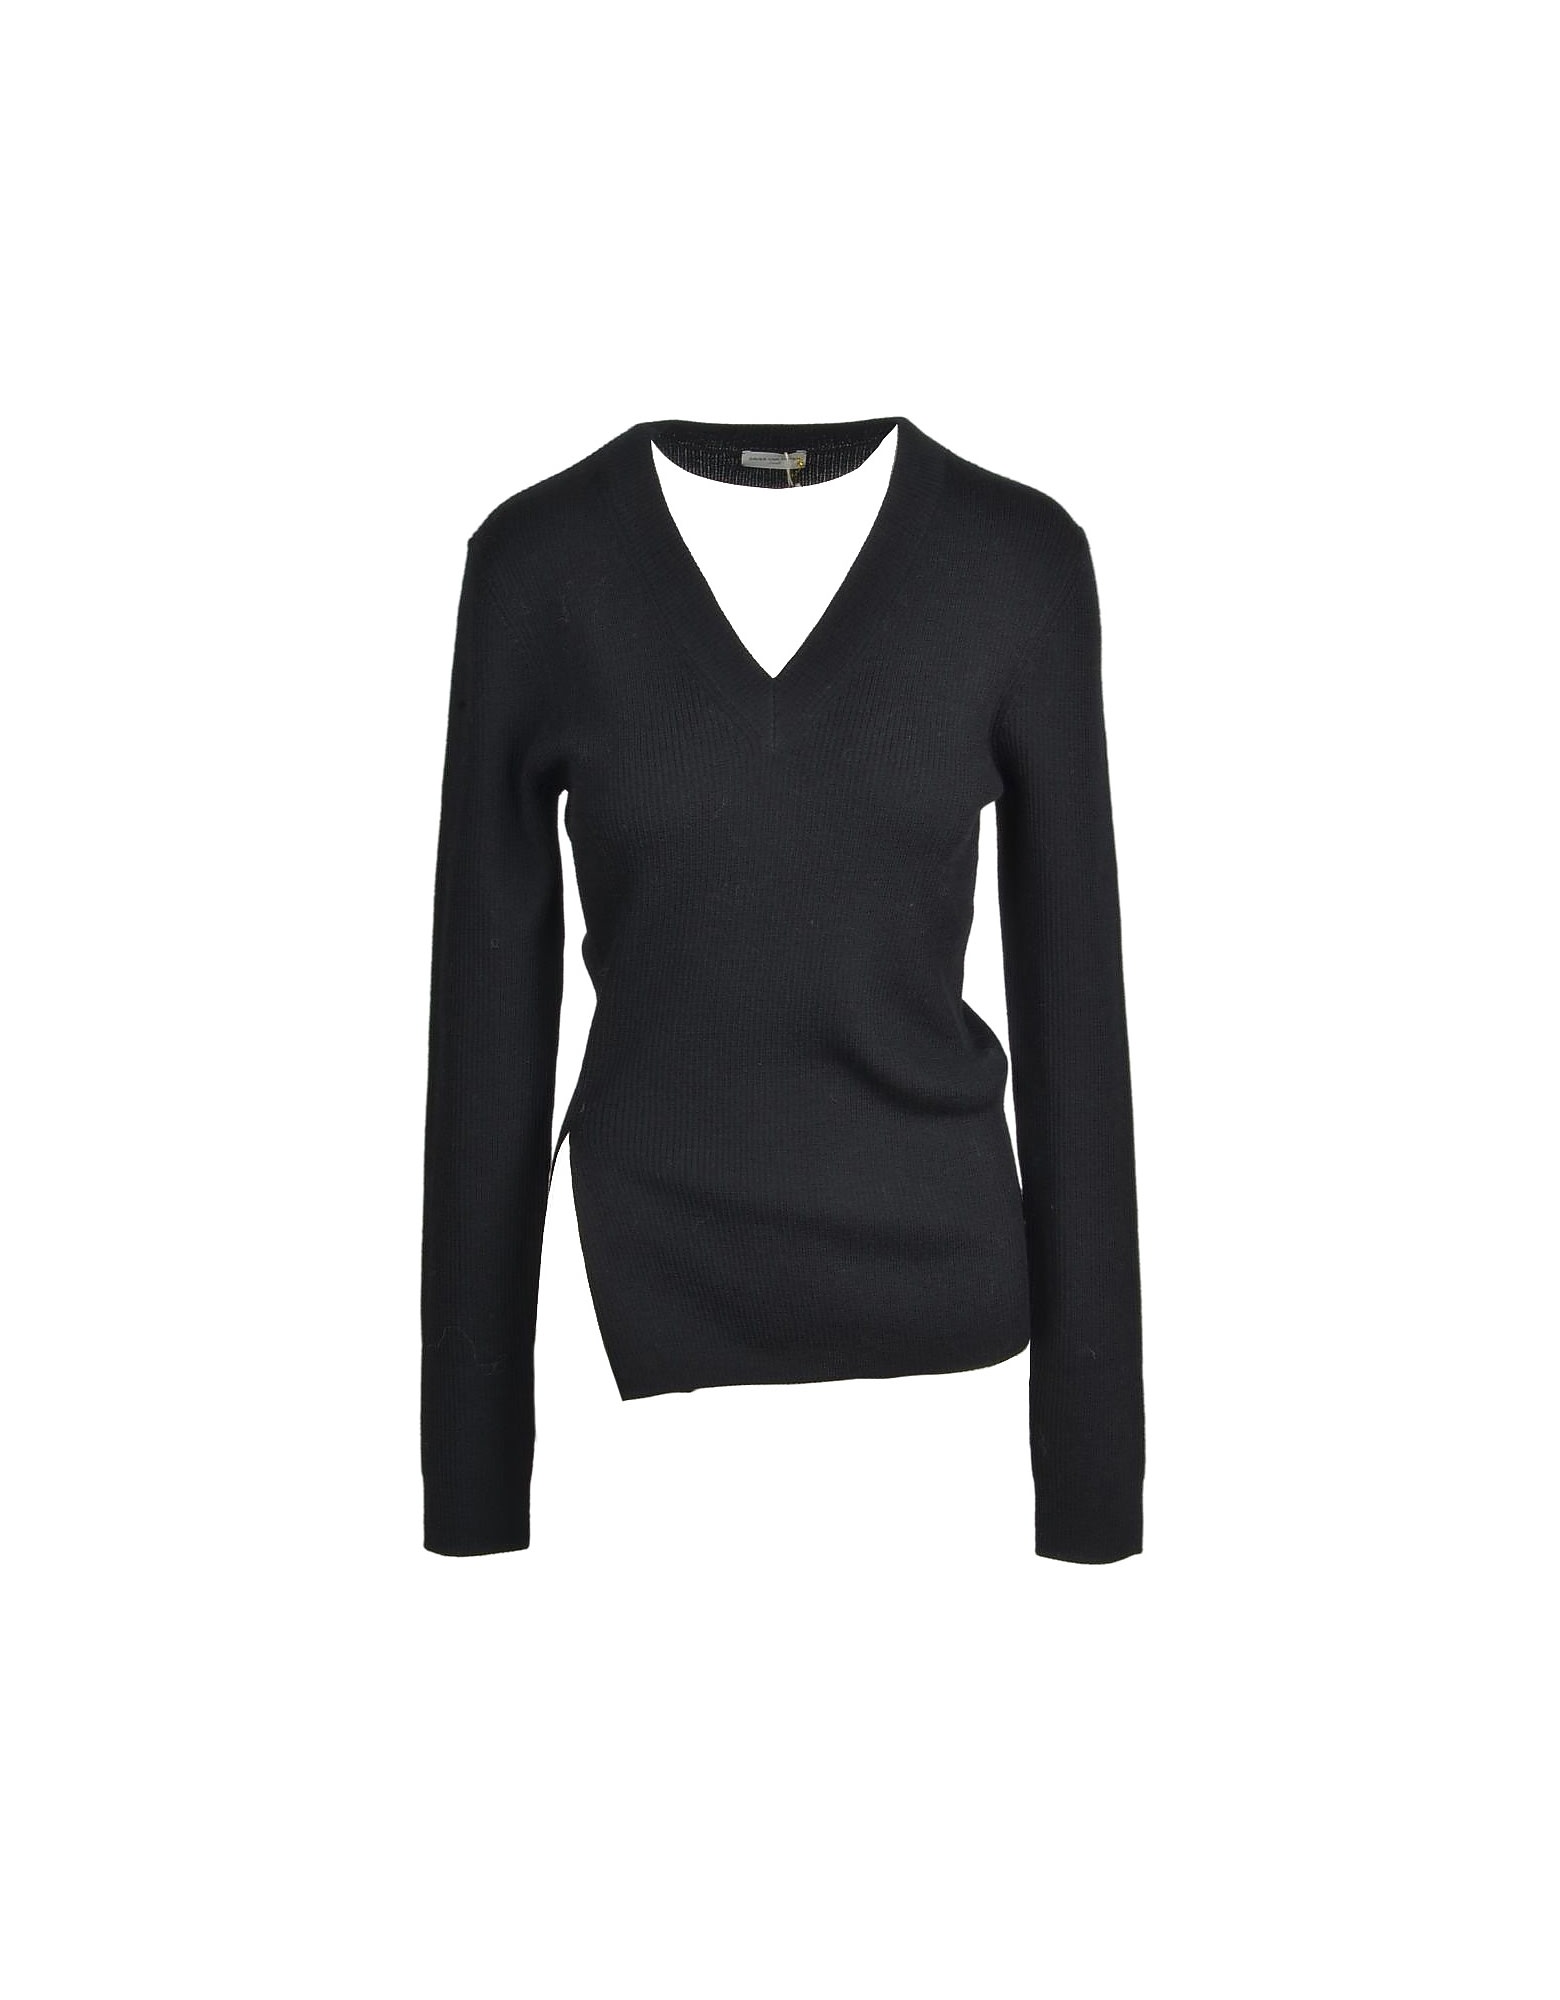 Dries Van Noten Womens Black Sweater